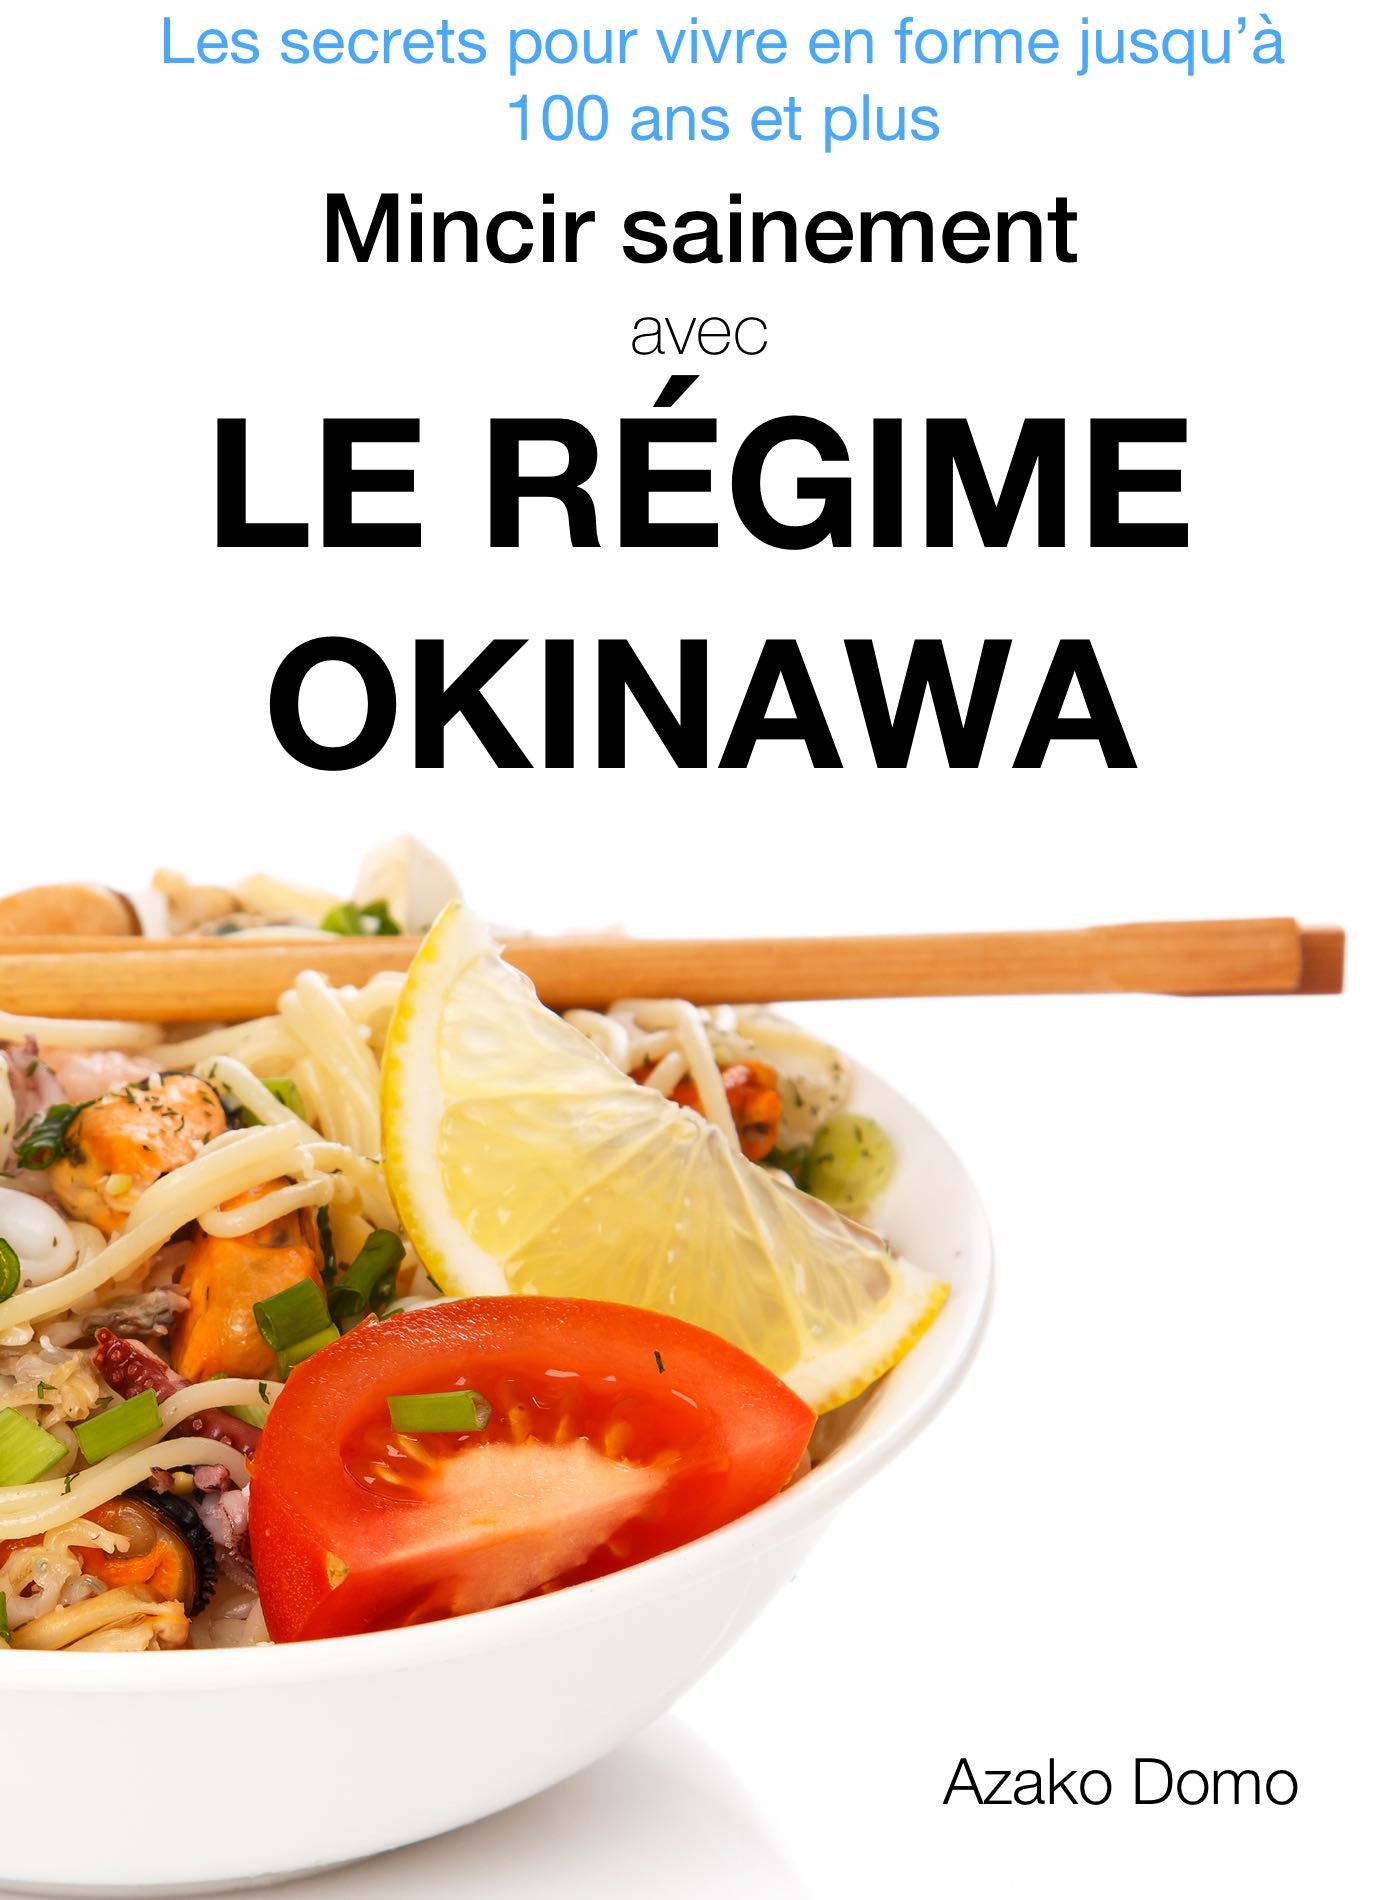 Mincir sainement avec le régime Okinawa - ebook